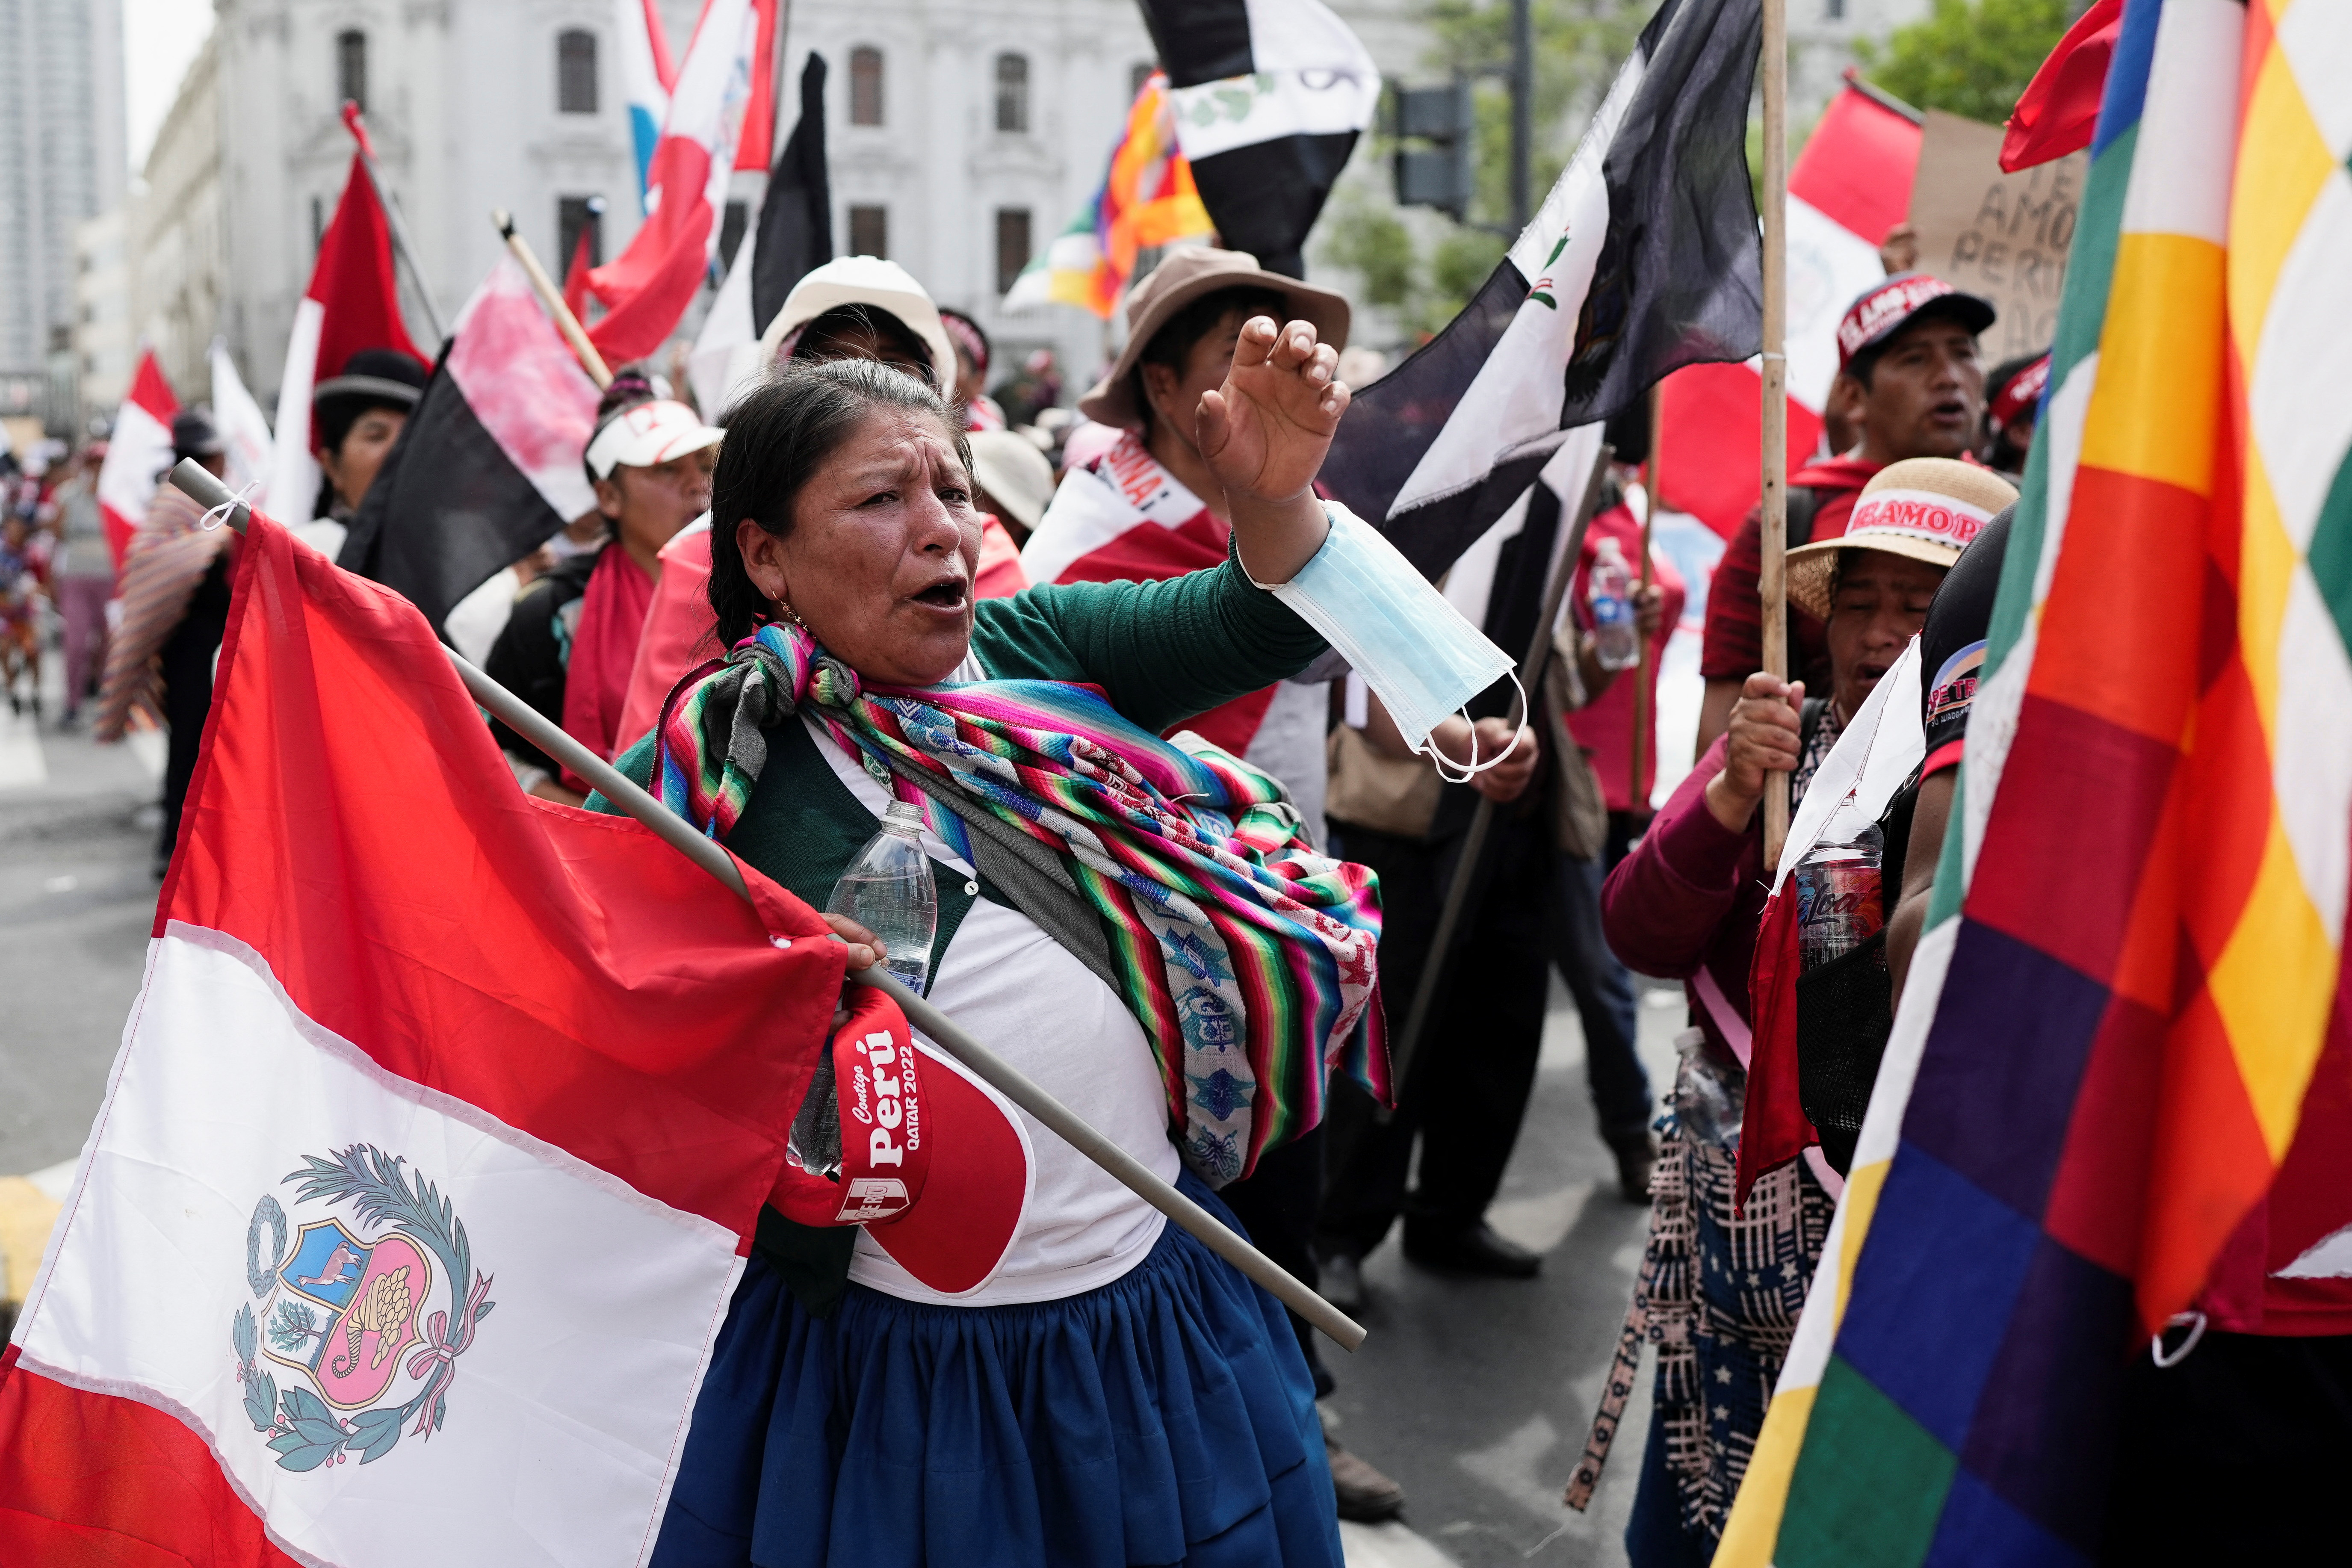 Descontento social se acrecienta en Perú. Toma de Lima se caracterizó por dispersión y desorganización de manifestantes. REUTERS/Angela Ponce